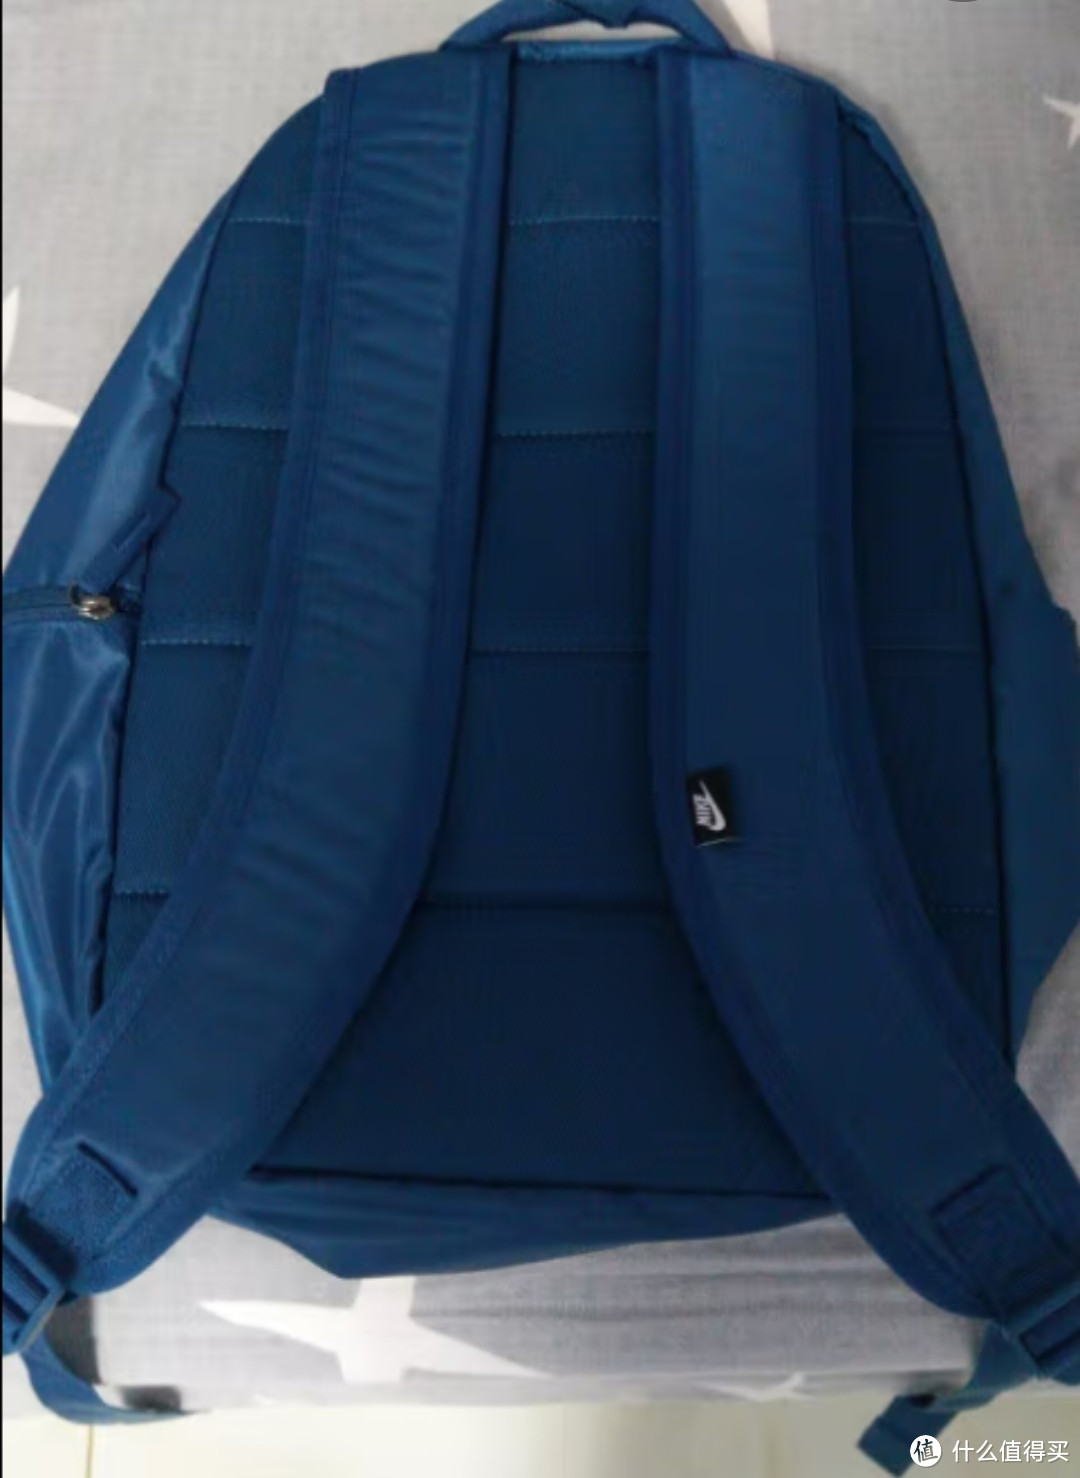 耐克NIKE 男女通款 运动包 双肩包 书包 旅行包 背包 HERITAGE 休闲包 DB3300-010黑色中号